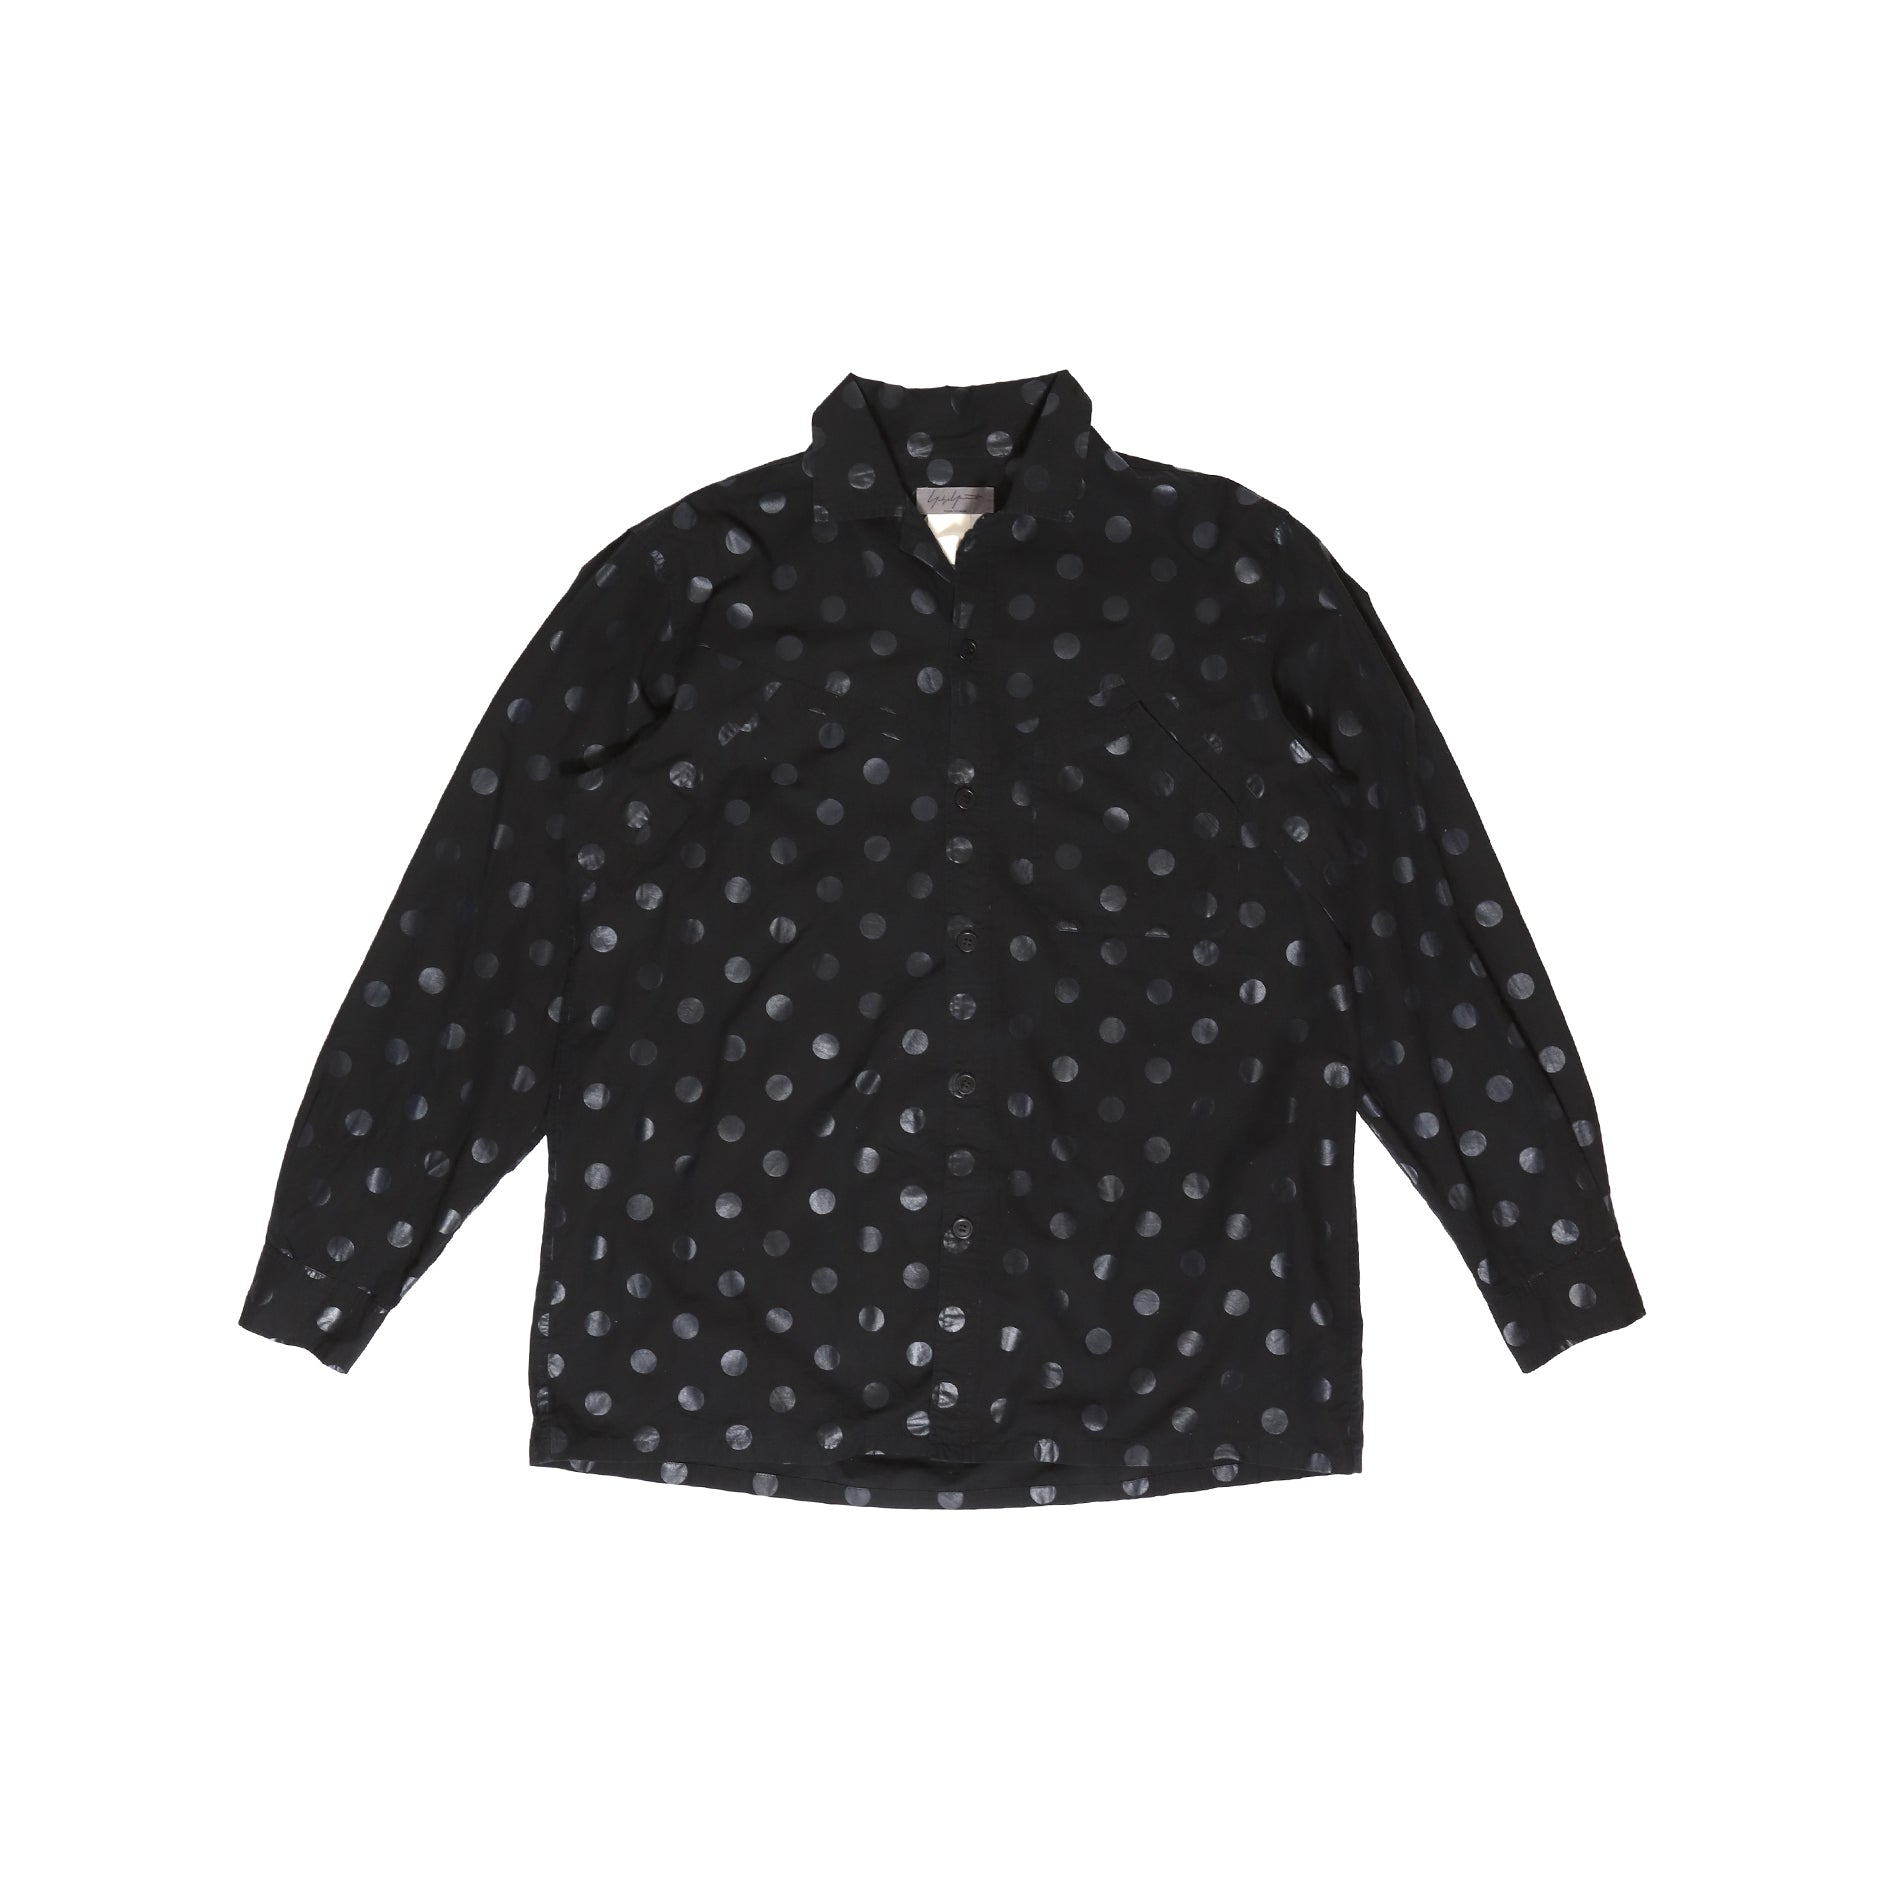 Yohji Yamamoto 2000s Polka Dot Shirt